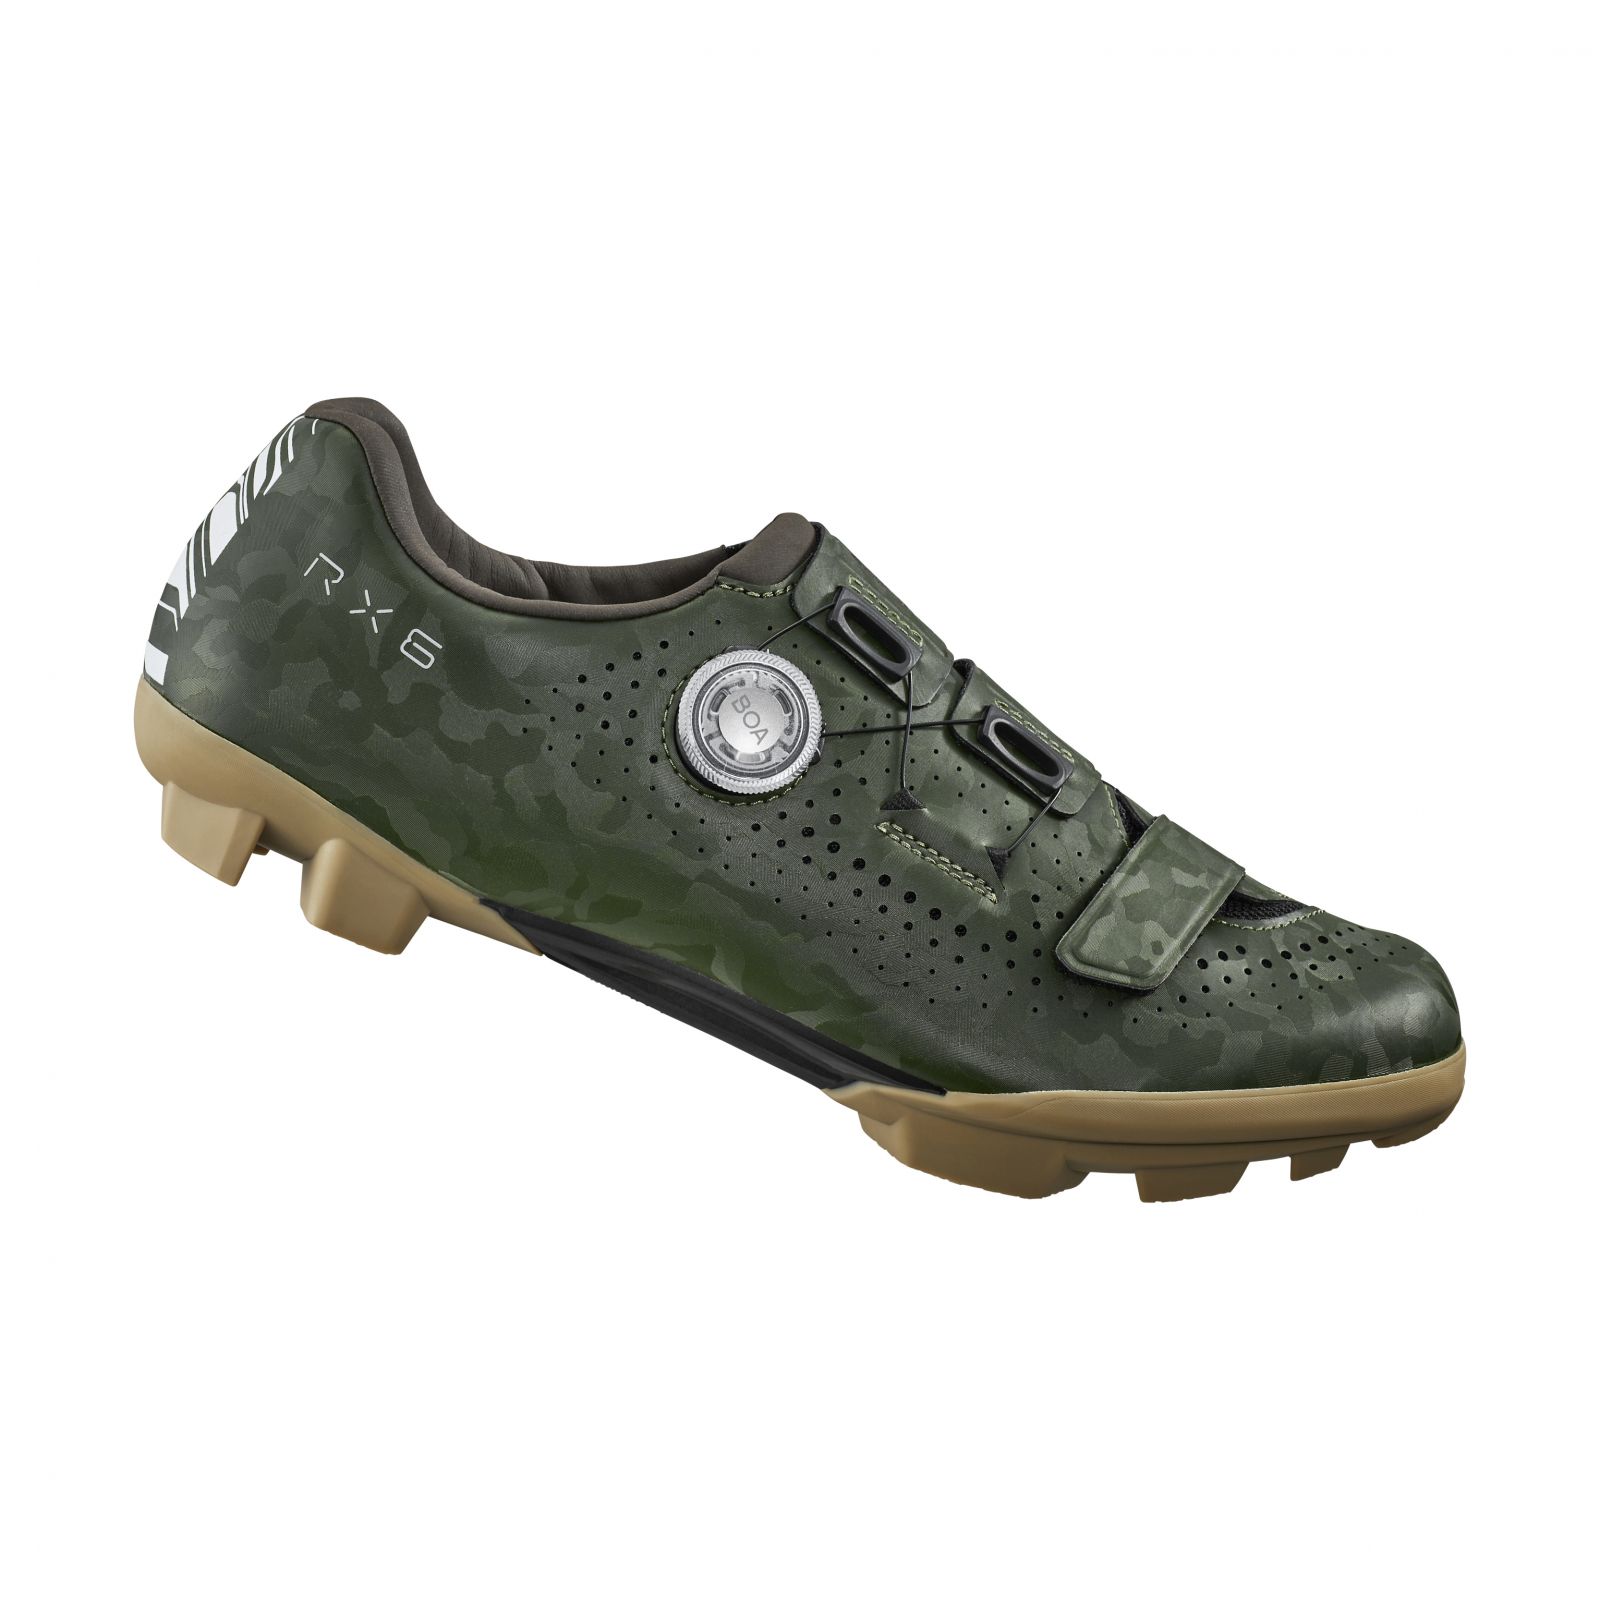 SHIMANO gravel obuv SH-RX600, pánská, zelená, 41